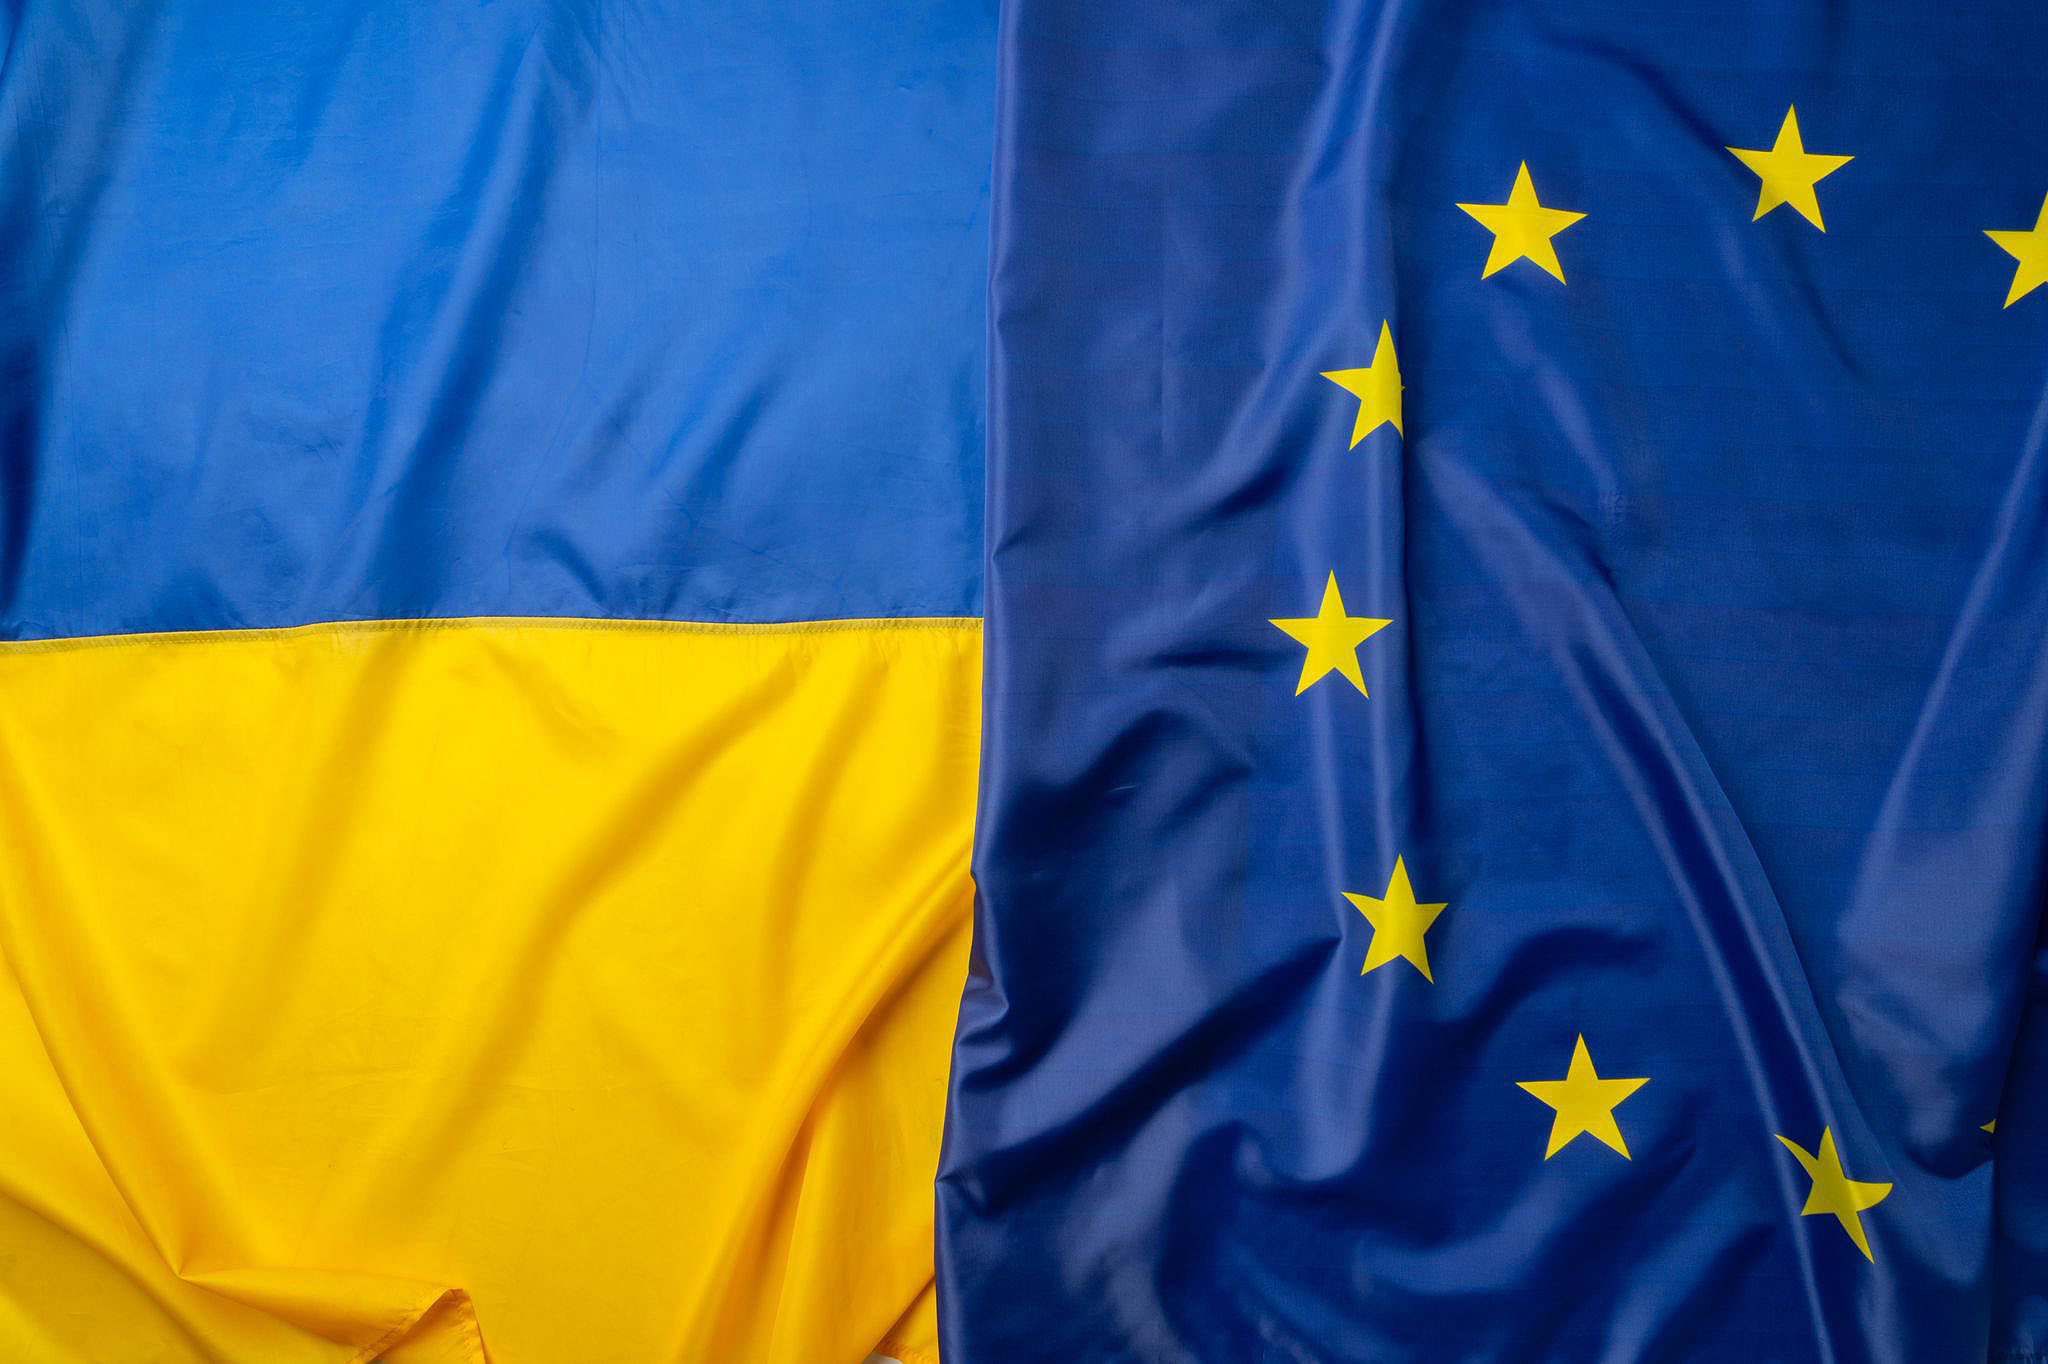 Украина принята в евросоюз. ЕС выделит Украине 1,2 млрд евро макрофинансовой помощи. #STANDFORUKRAINE.